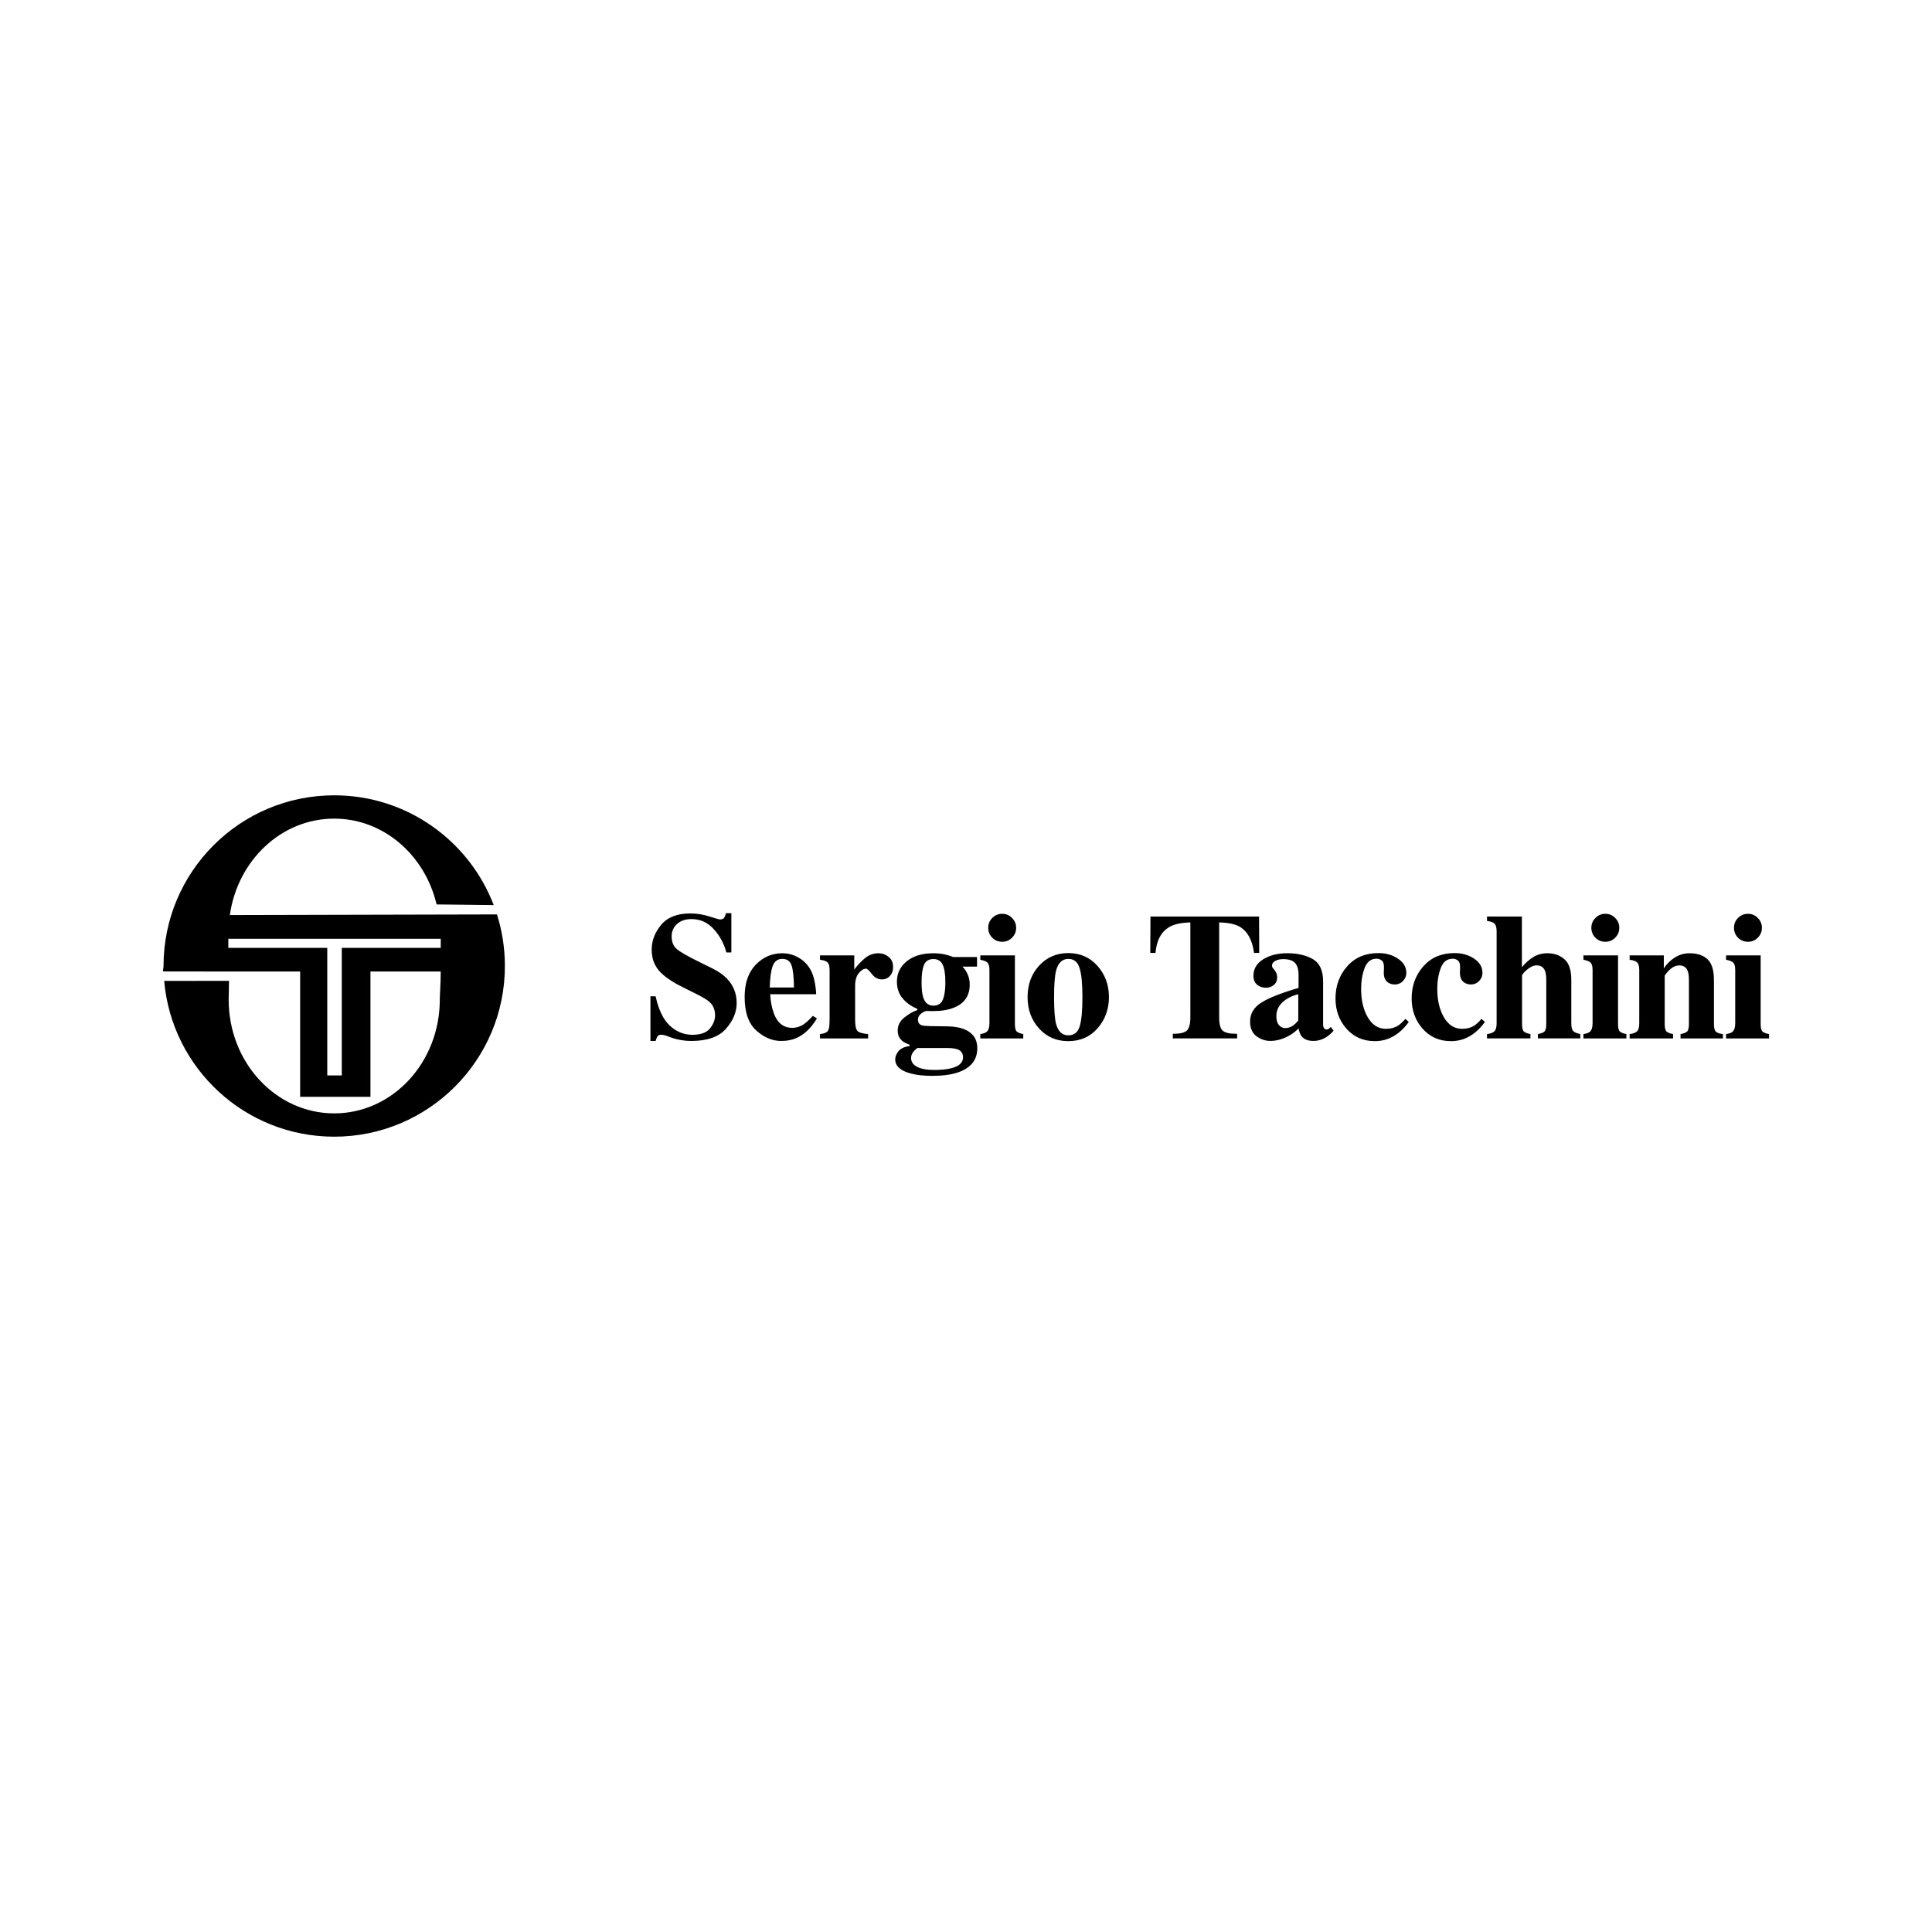 Sergio Tacchini.svg